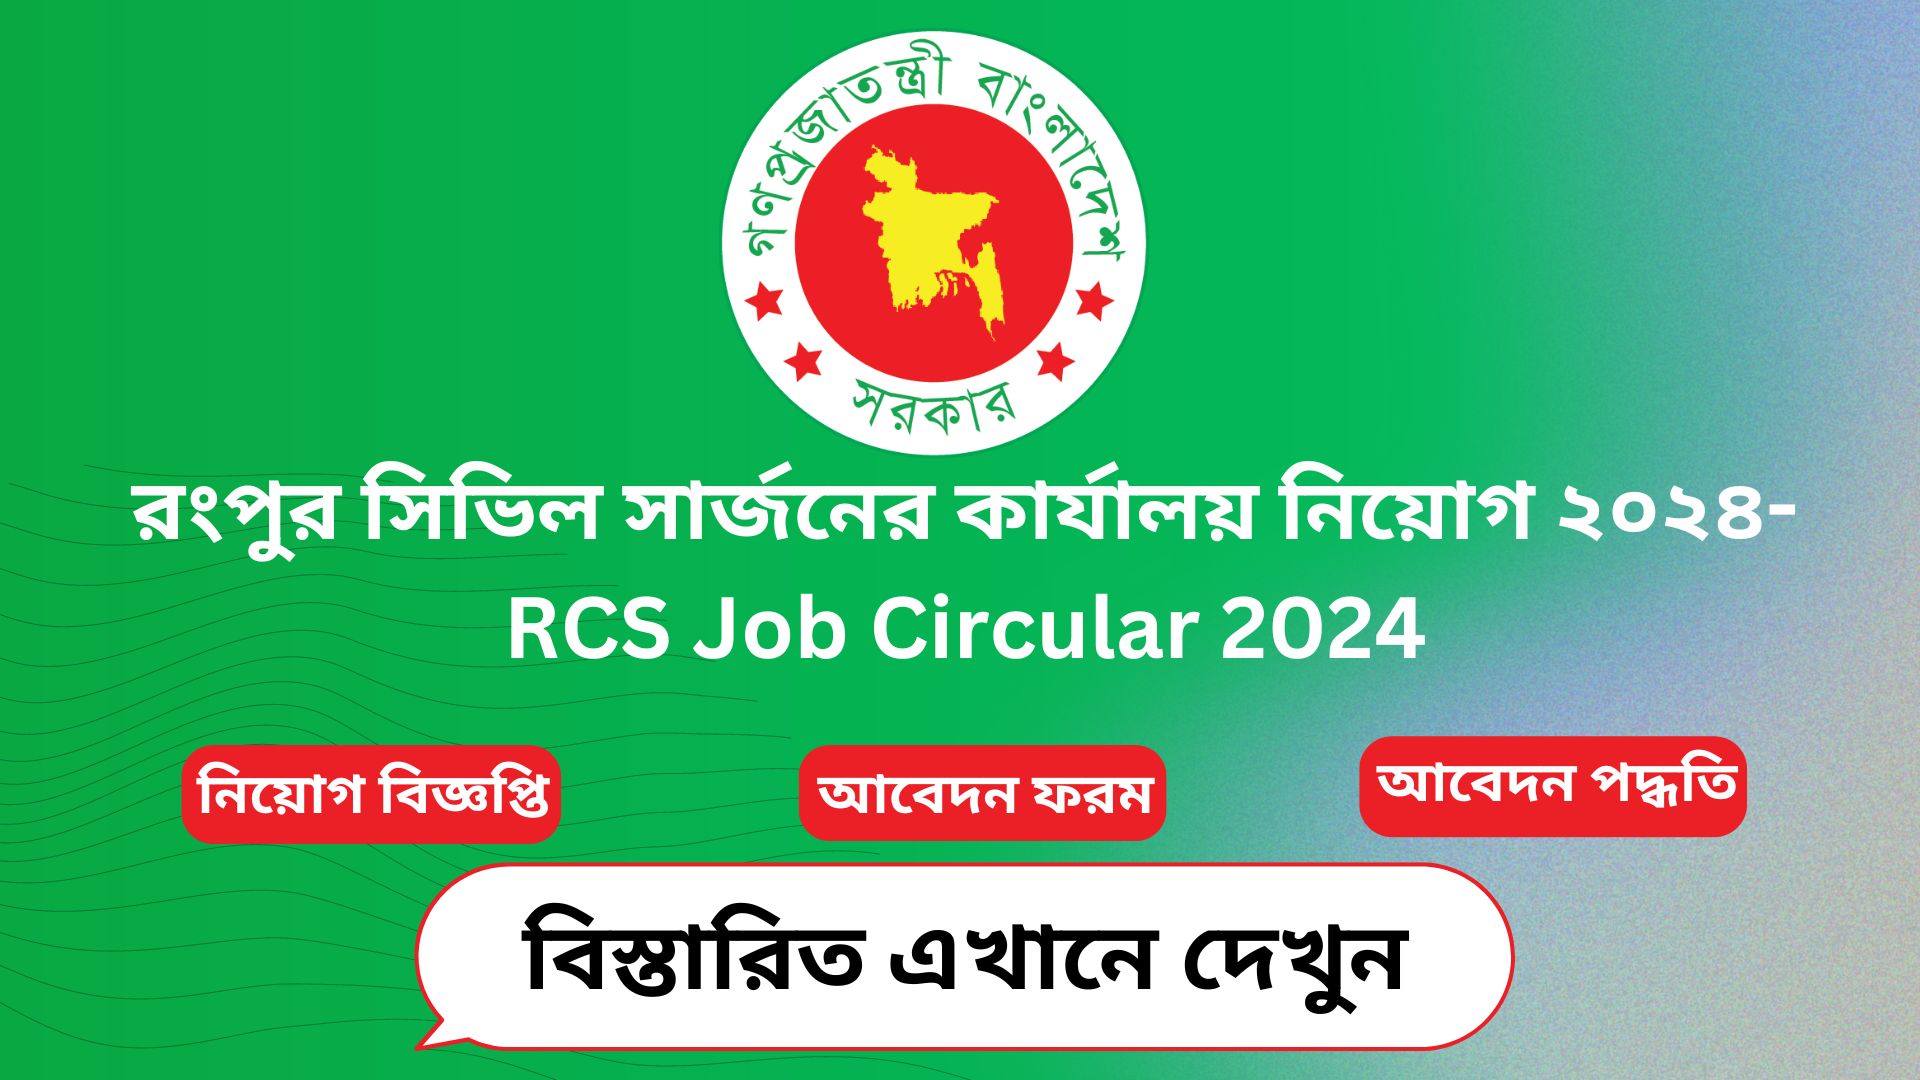 রংপুর সিভিল সার্জনের কার্যালয় নিয়োগ ২০২৪-RCS Job Circular 2024